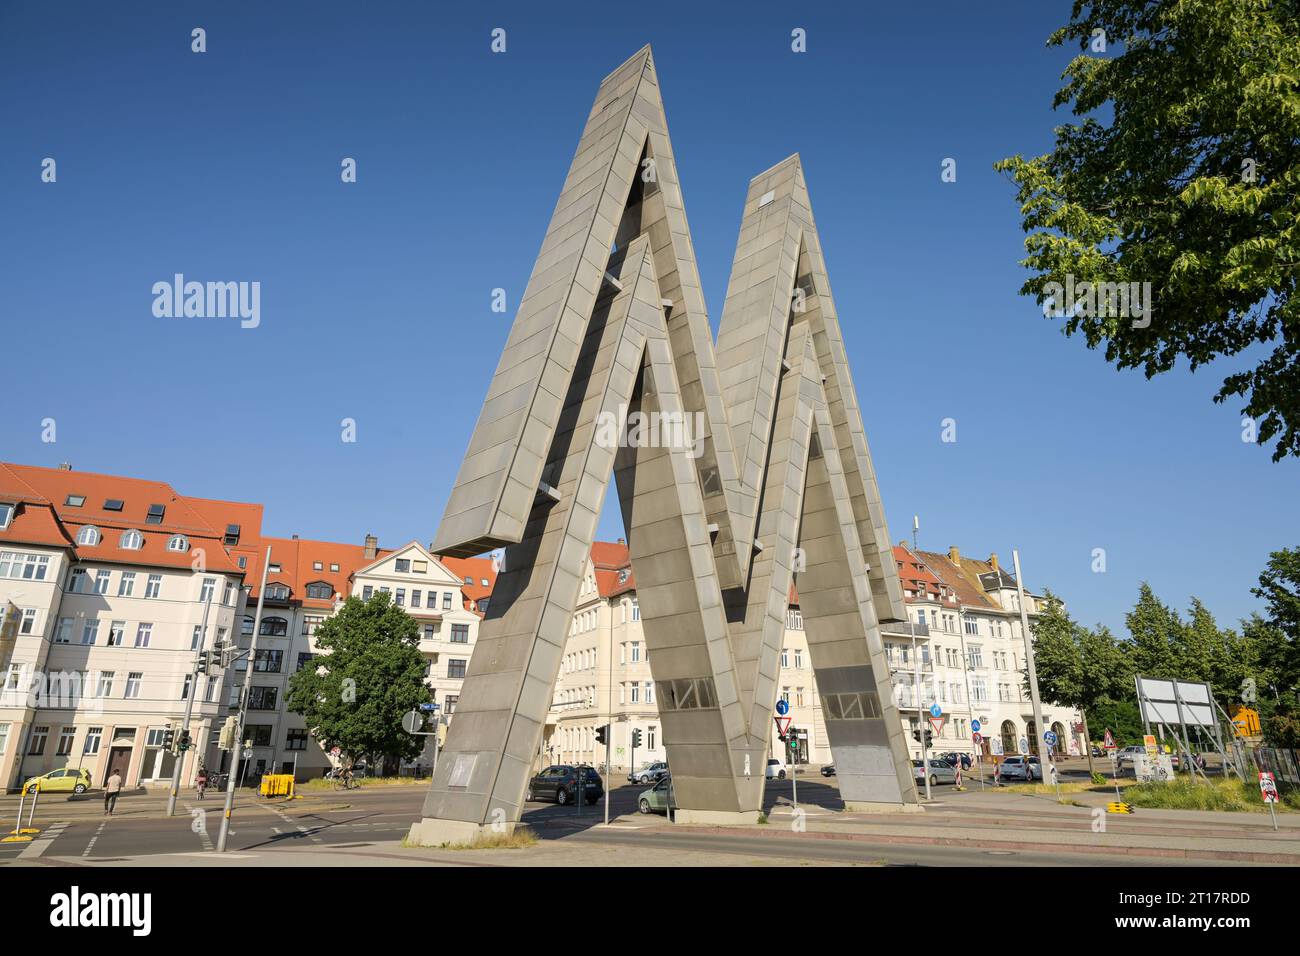 Messesymbol, Alte Messe, Prager Straße, Leipzig, Sachsen, Deutschland Stock Photo